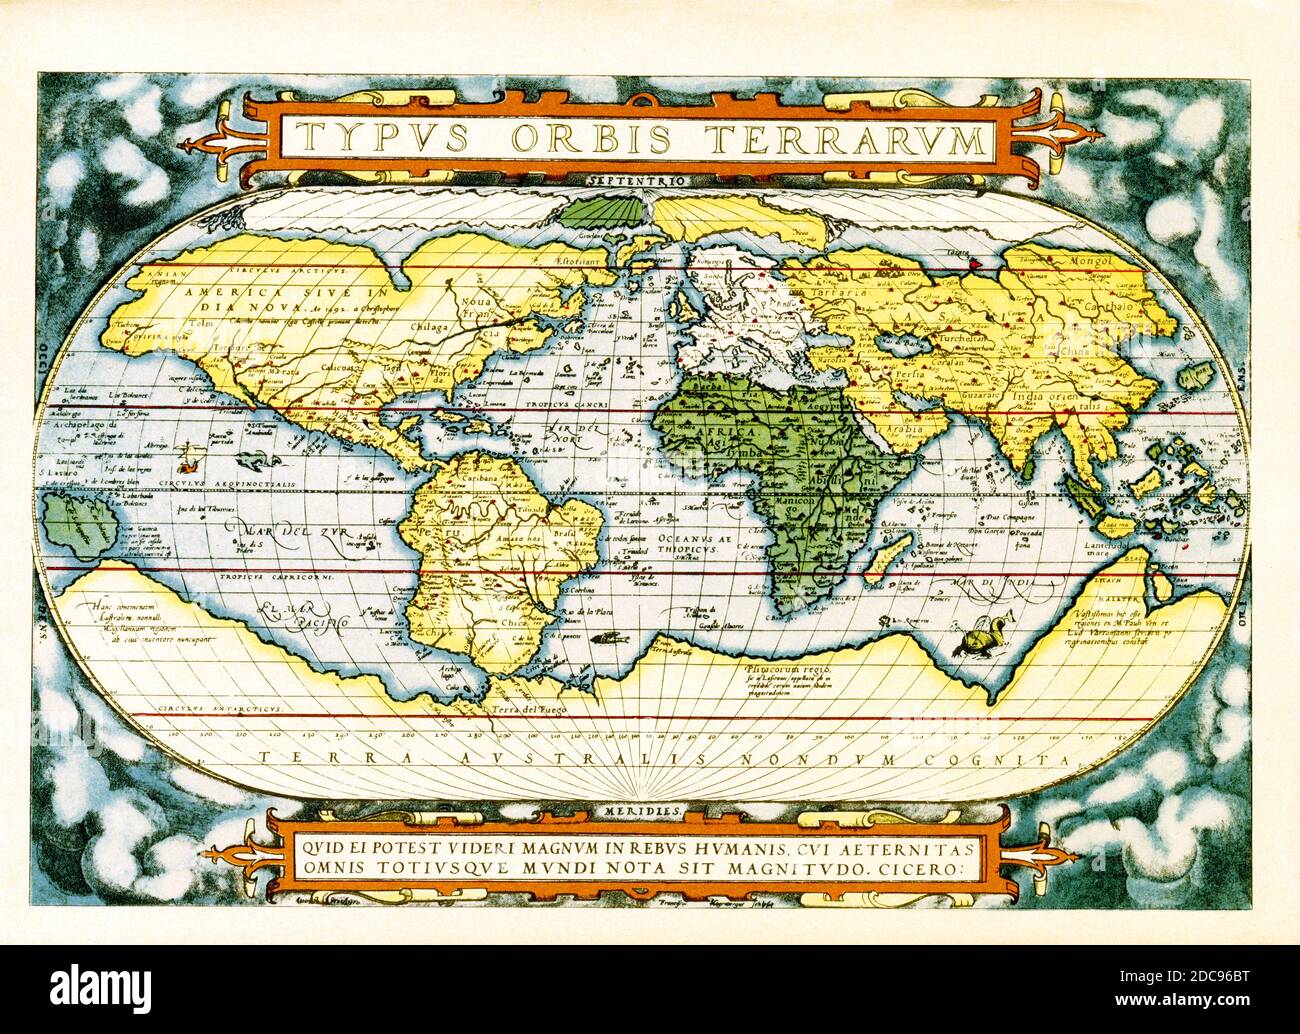 Der Text oben auf dieser Weltkarte von Abraham Ortelius lautet: Typus Orbis Terrarum (Weltkarte). Die Karte stammt aus dem Jahr 1570 und ist die erste Karte der Welt, die in einem Standardatlas erscheint und somit von grundlegender Bedeutung für die Geschichte der Kartographie ist. Zentriert auf dem Atlantischen Ozean, deckt die Karte die gesamte Welt von Pol zu Pol ab. Die allgemeine Darstellung einer ovalen Projektion aus früheren Karten von Appianus und Bordonius abgeleitet, kartographisch ist es aus der Welt von Gerard Mercator (1569), Gastaldi (1561) und Gutierrez abgeleitet. Der Text am unteren Rand ist ein Zitat, das dem zugeordnet ist Stockfoto